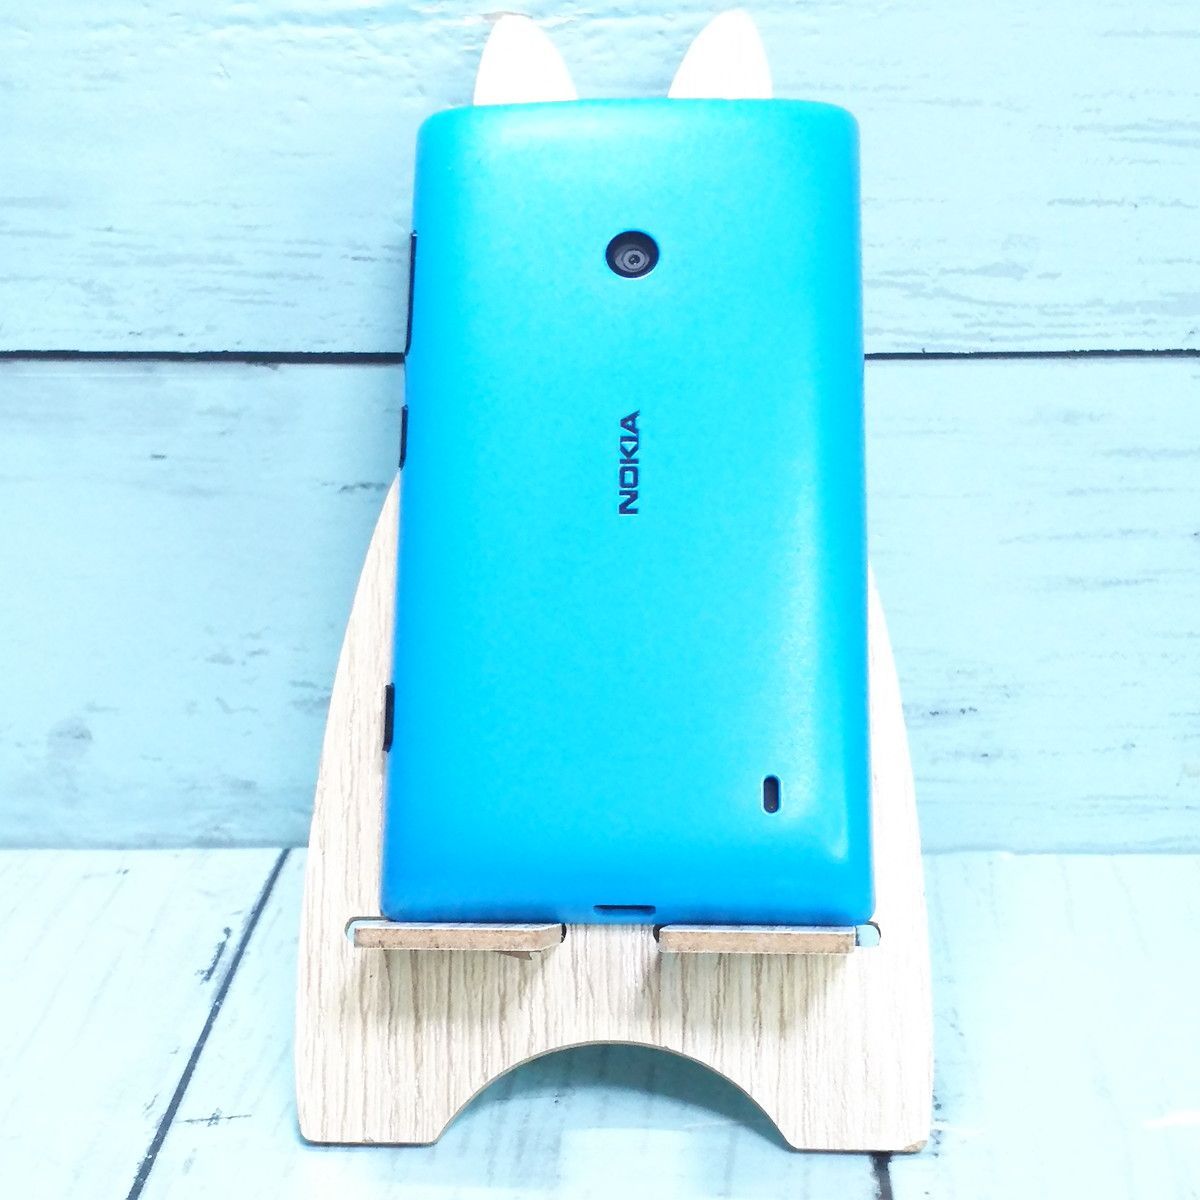 Nokia Lumia 520 ブルー シアン Windows Phone 本体 白ロム SIMロック 